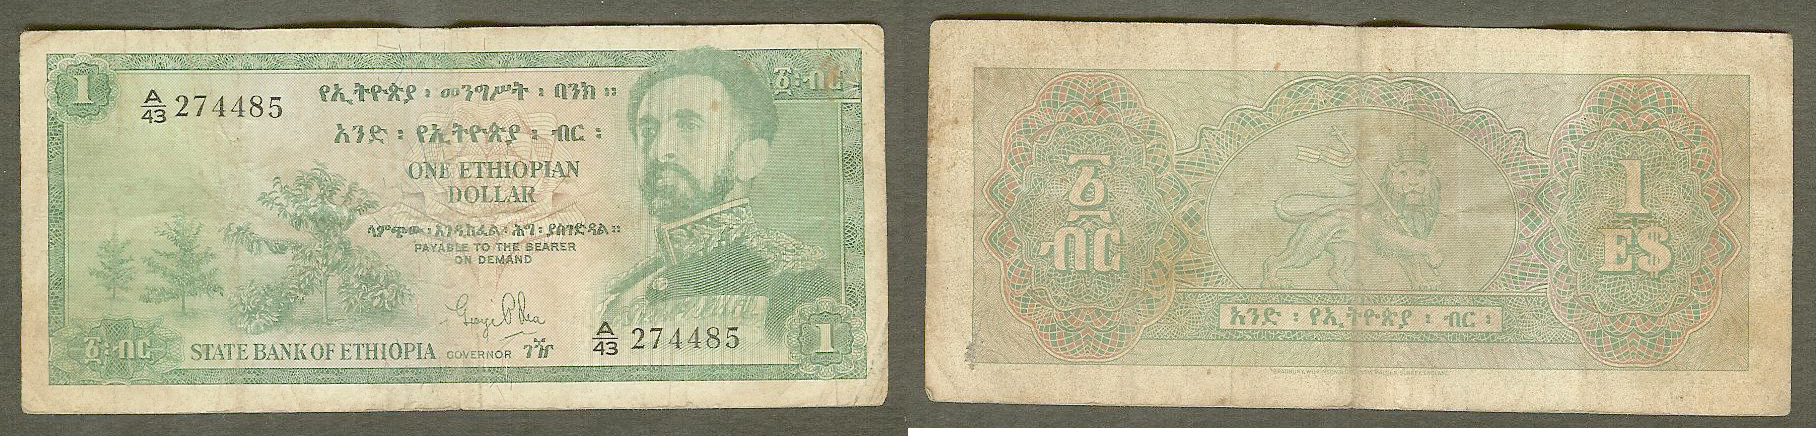 Ethiopie $1 Dollar (1961) Pick 18a TB